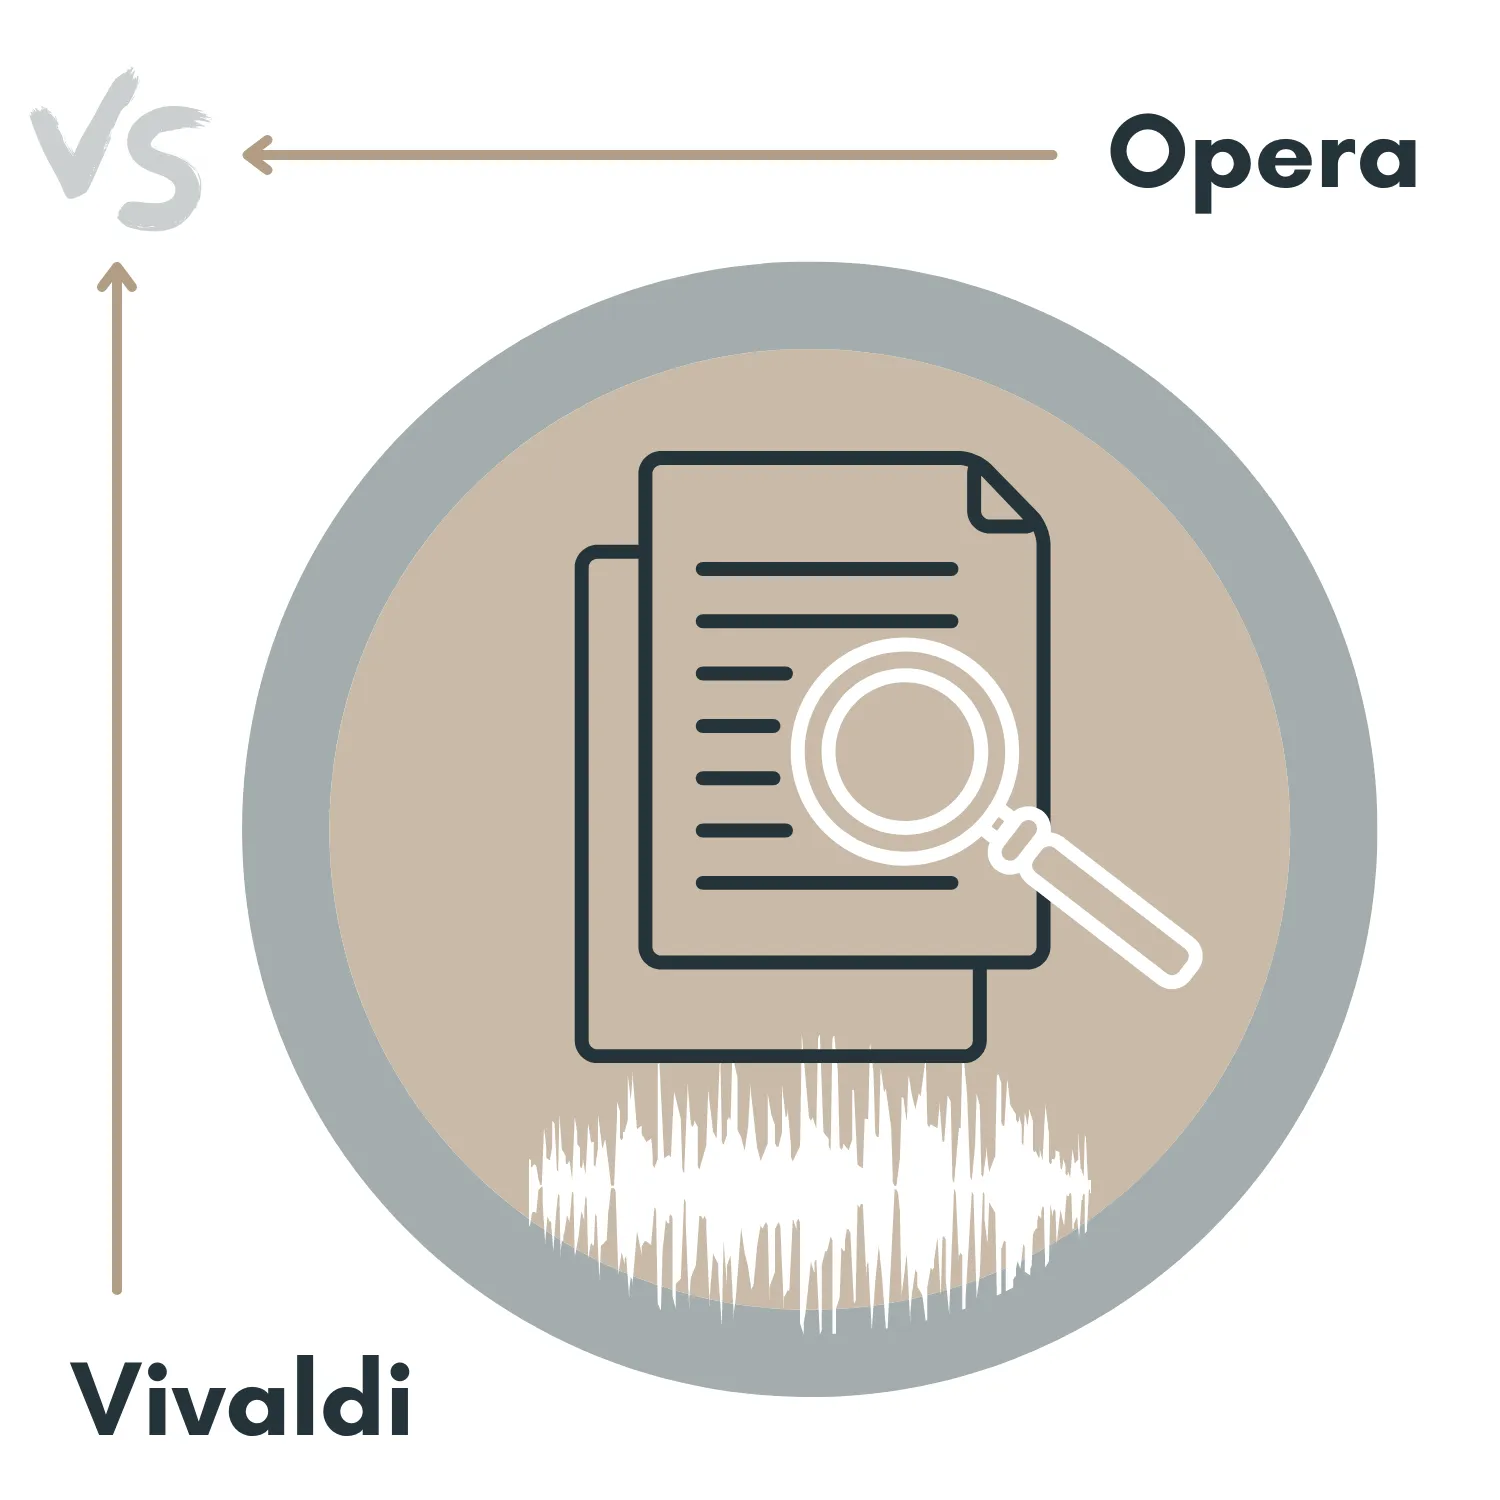 Opera vs. Vivaldi